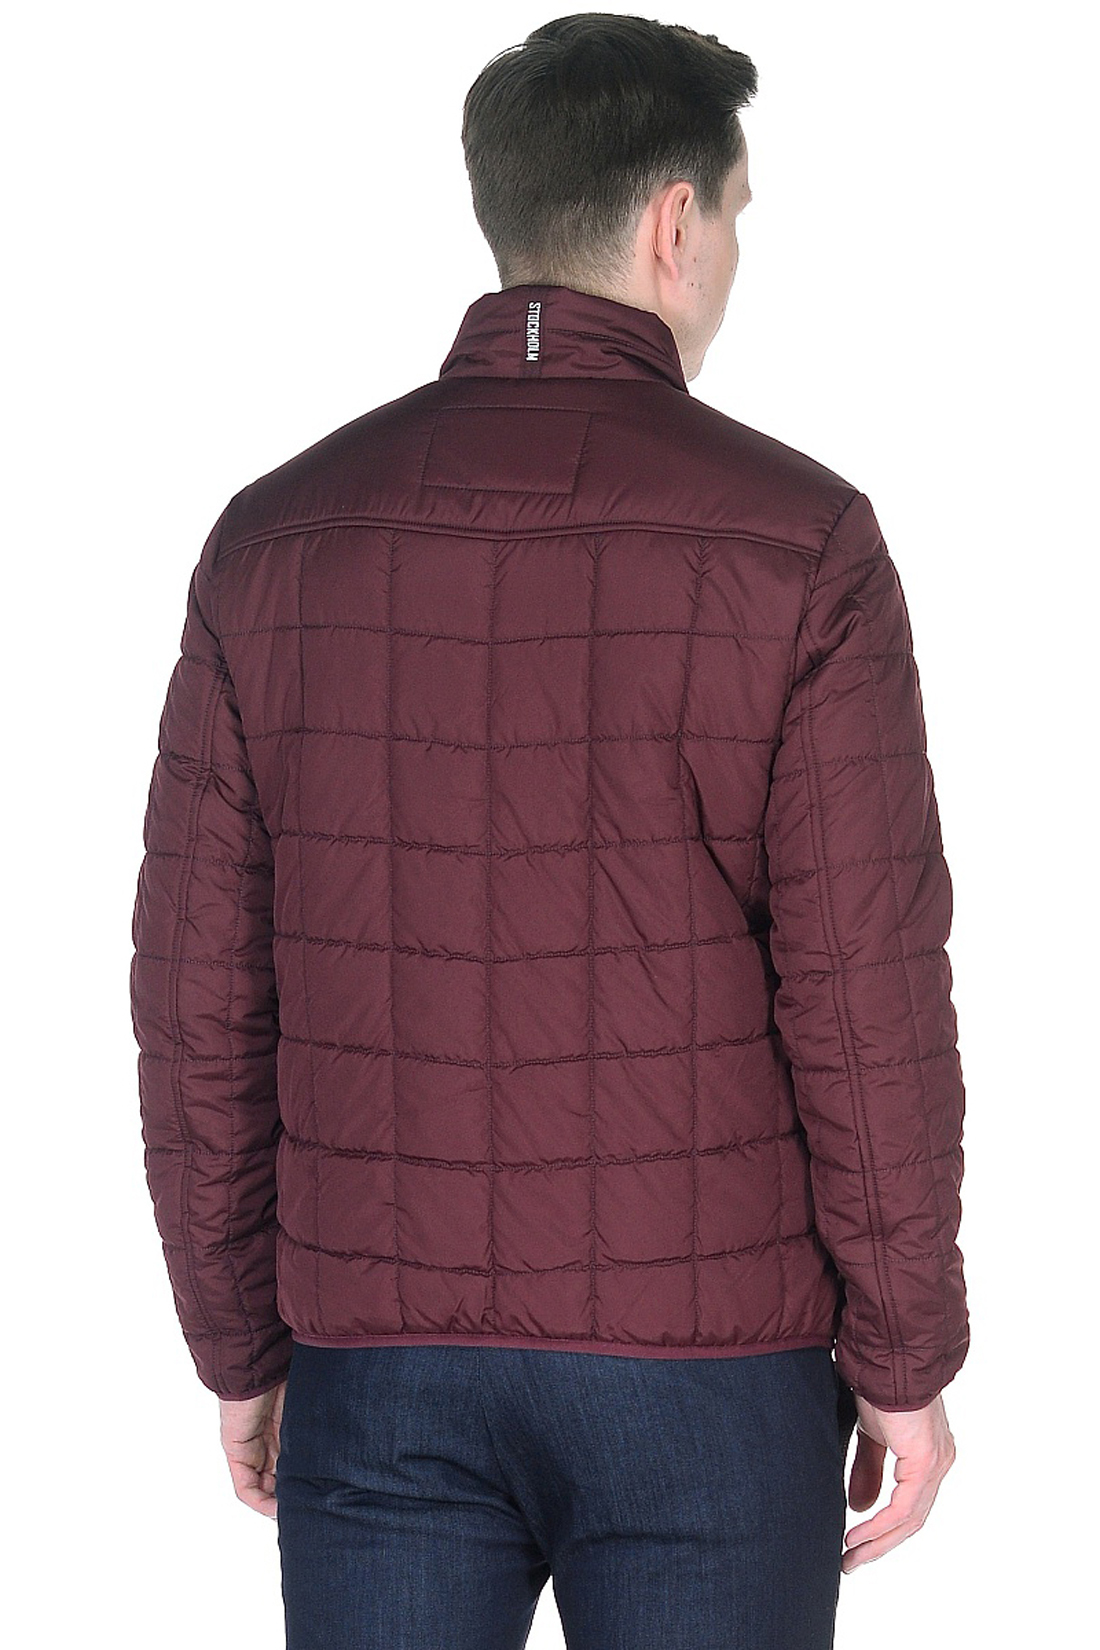 Куртка с квадратной простёжкой (арт. baon B538012), размер 3XL, цвет бордовый Куртка с квадратной простёжкой (арт. baon B538012) - фото 2